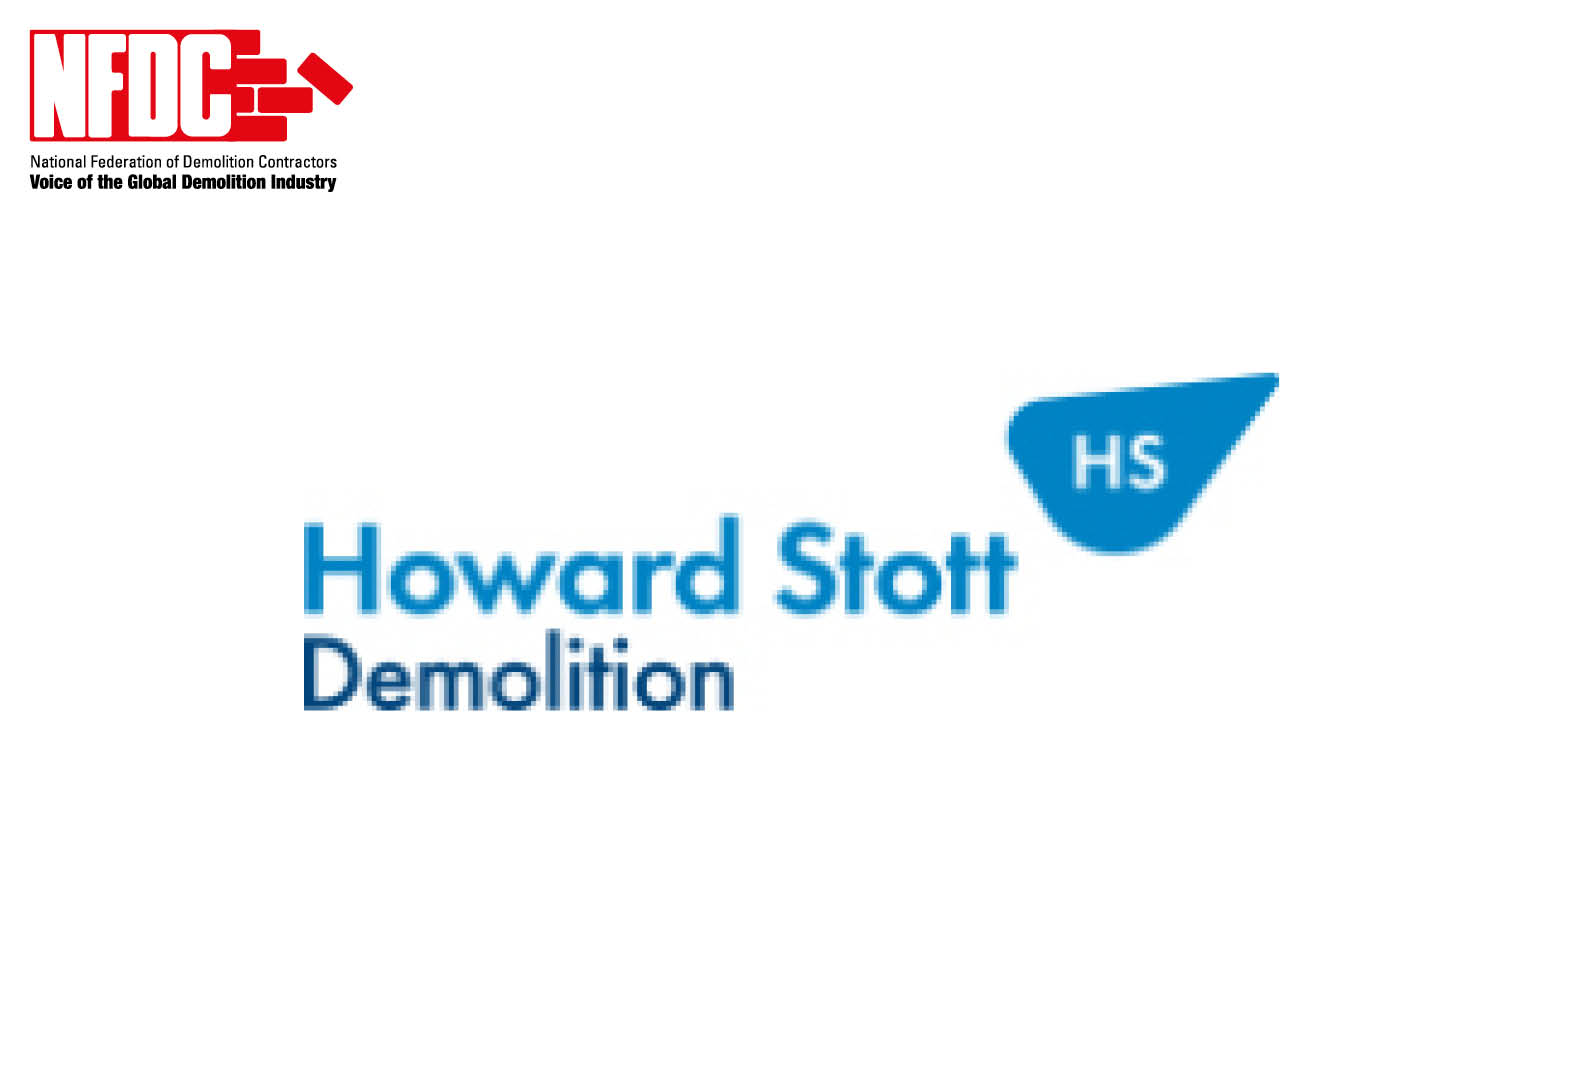 Howard Stott Demolition Ltd